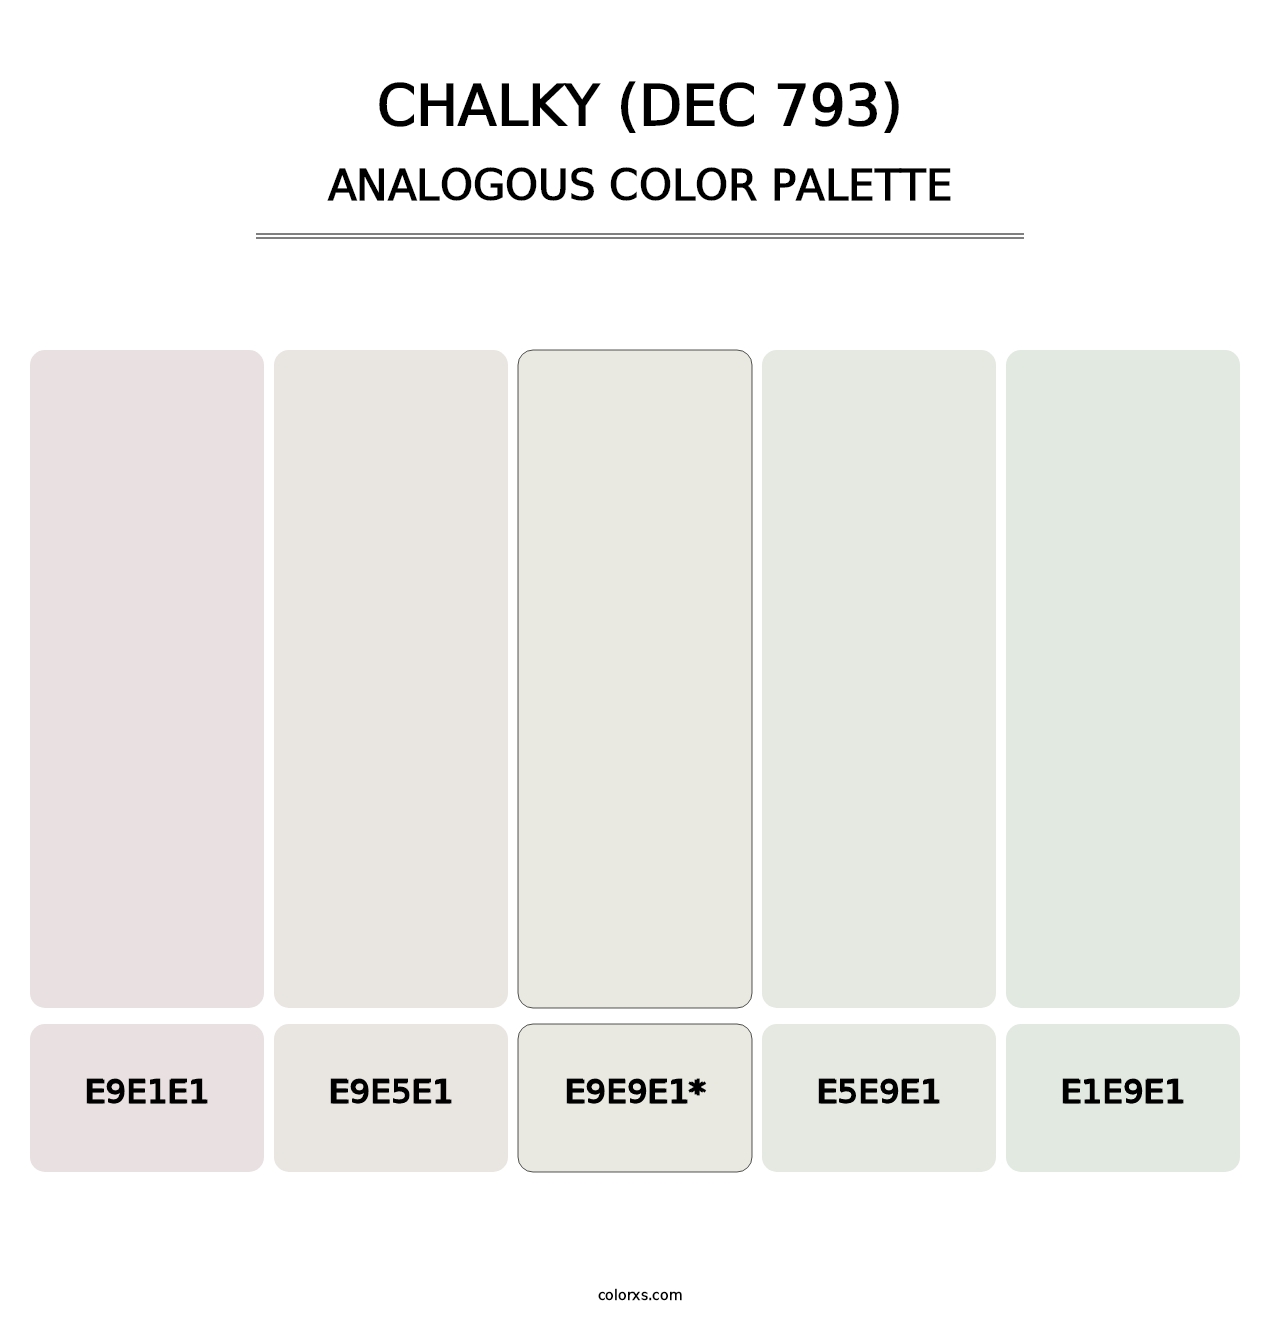 Chalky (DEC 793) - Analogous Color Palette